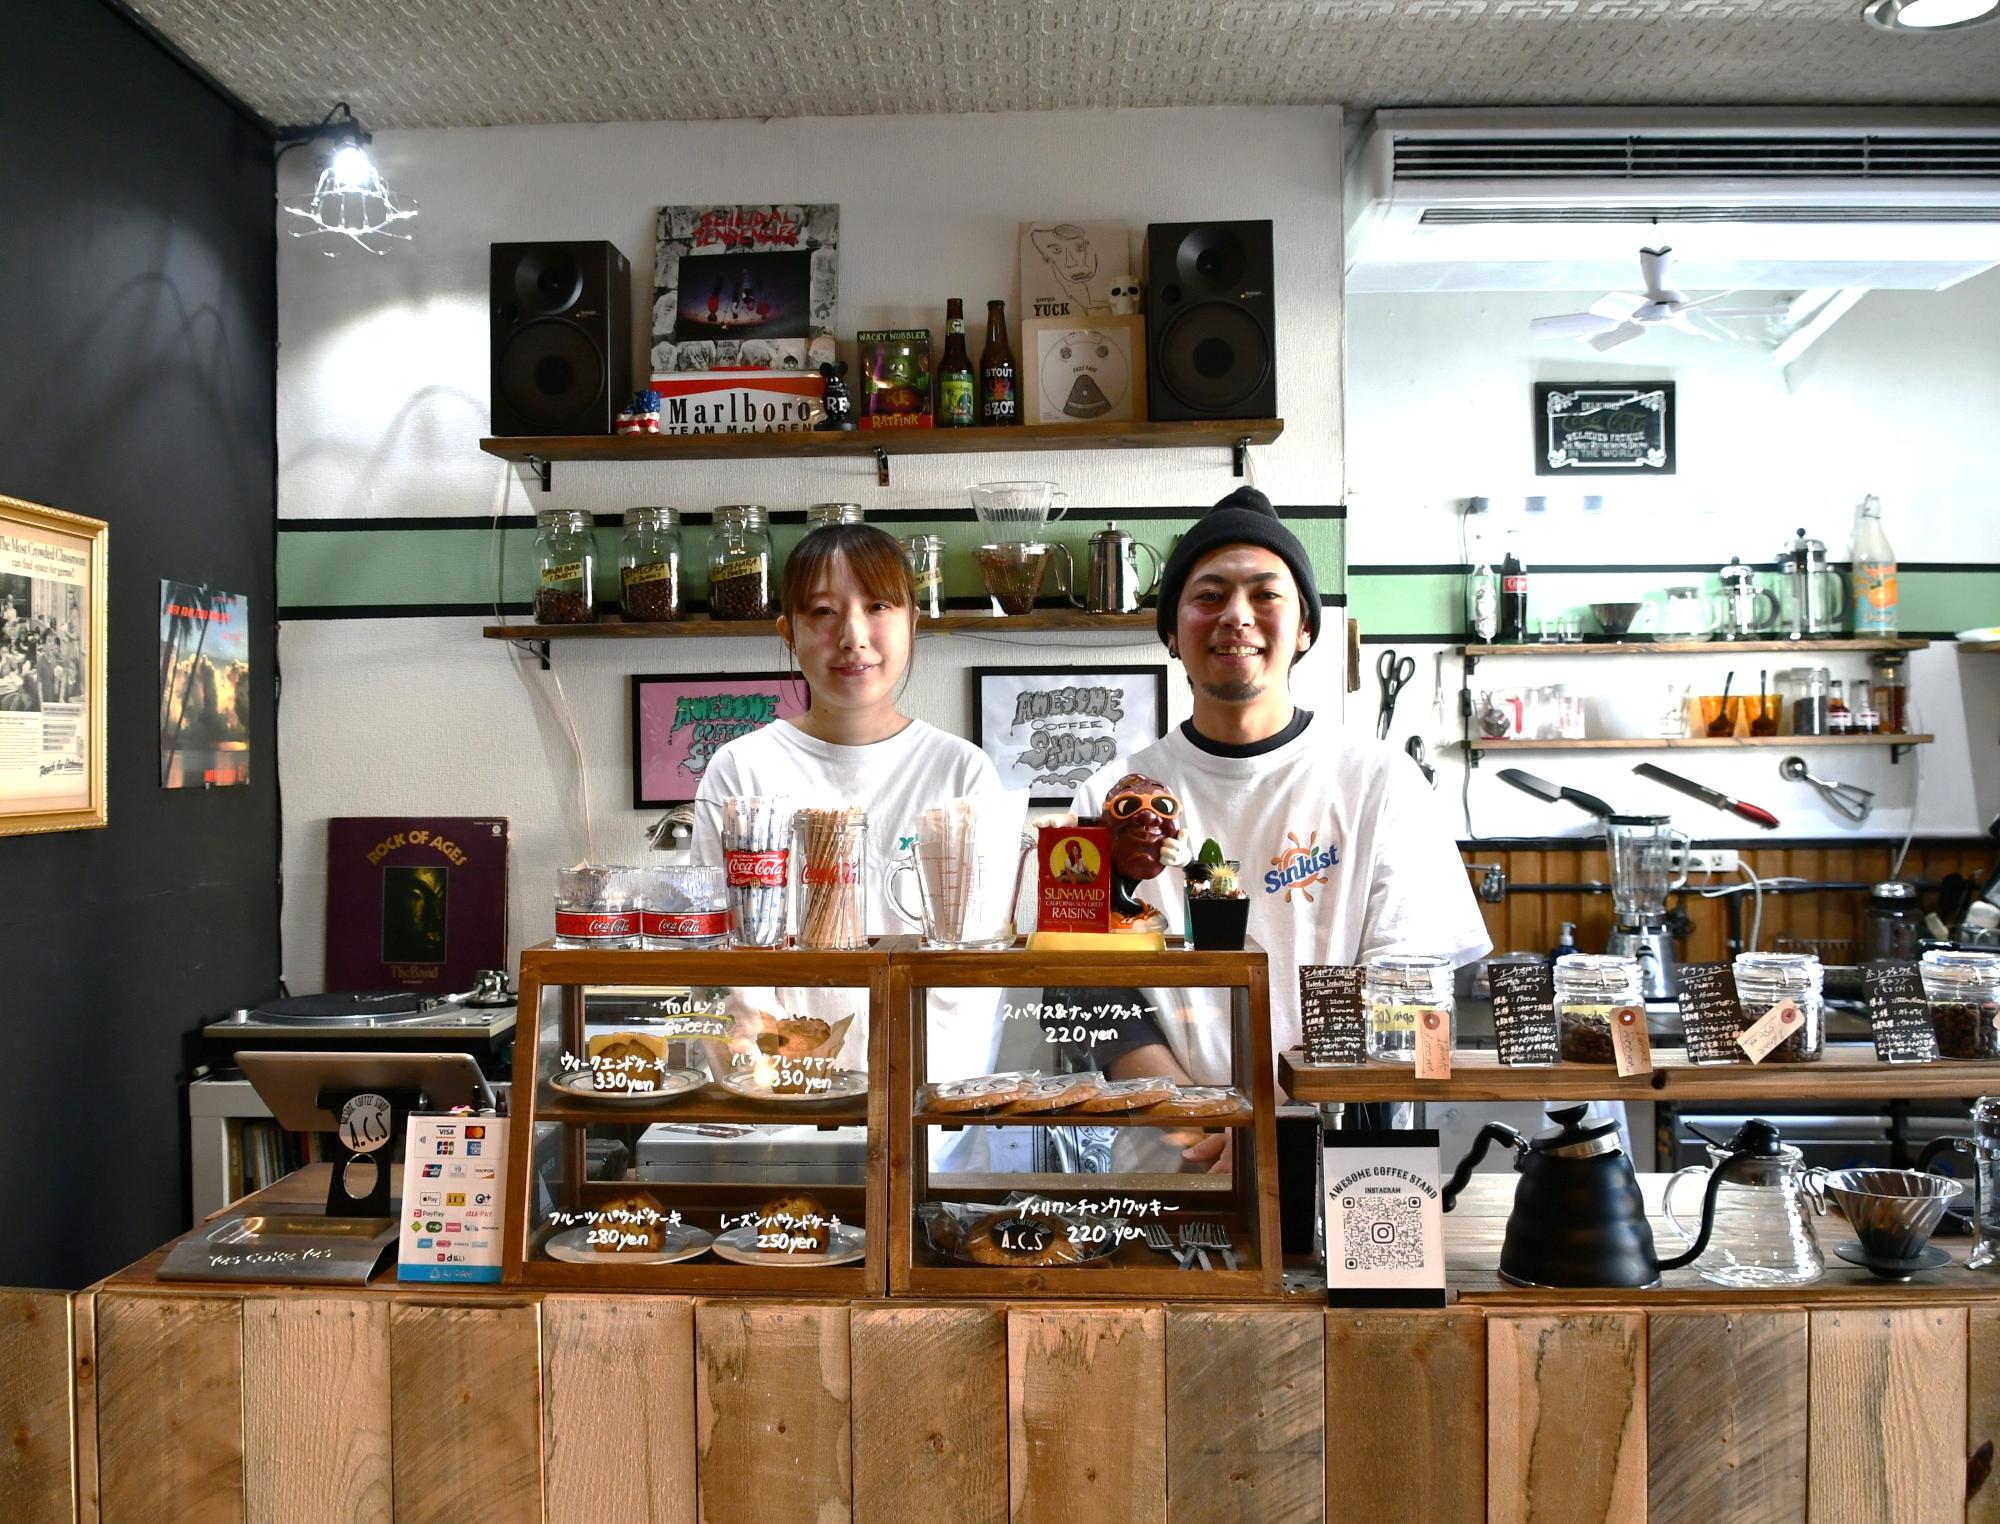 画像:オーサムコーヒースタンドのお店の前で並ぶ蔵さんと理沙さん